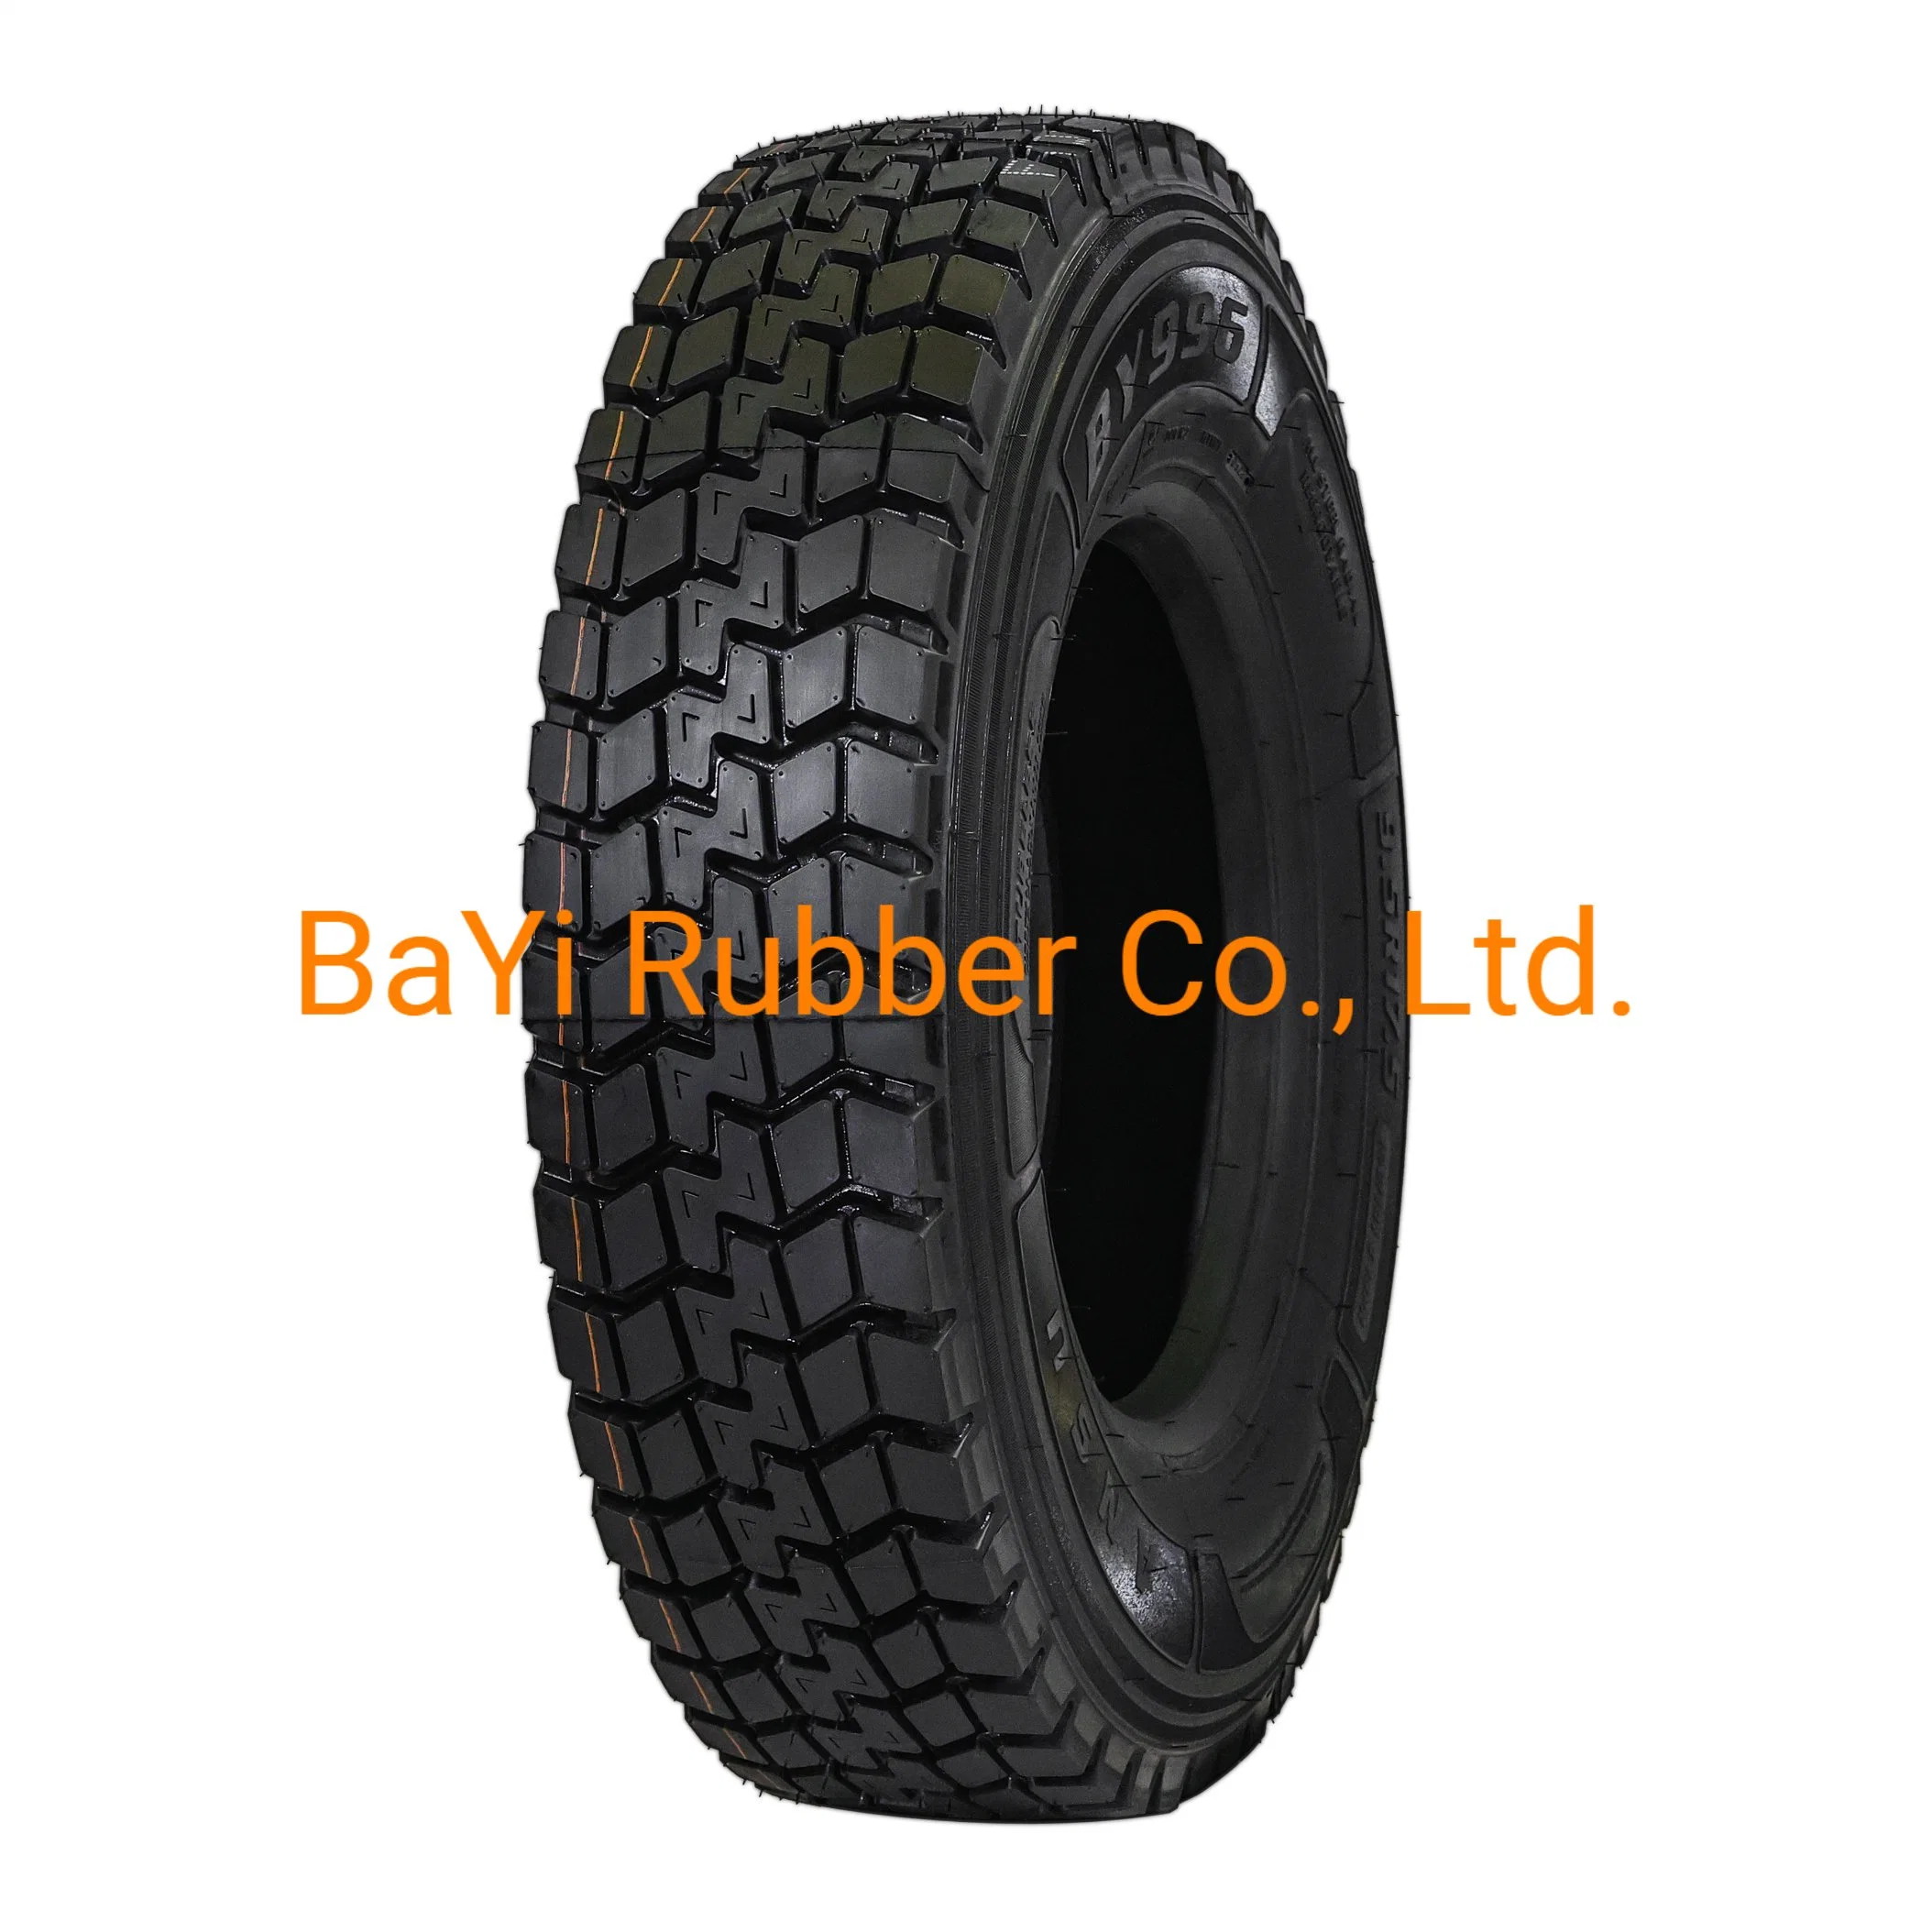 Bayi Rubber Ansu Wonderland novo pneu preço melhor pneu Alto-desempenho Pneu de tracção elevado